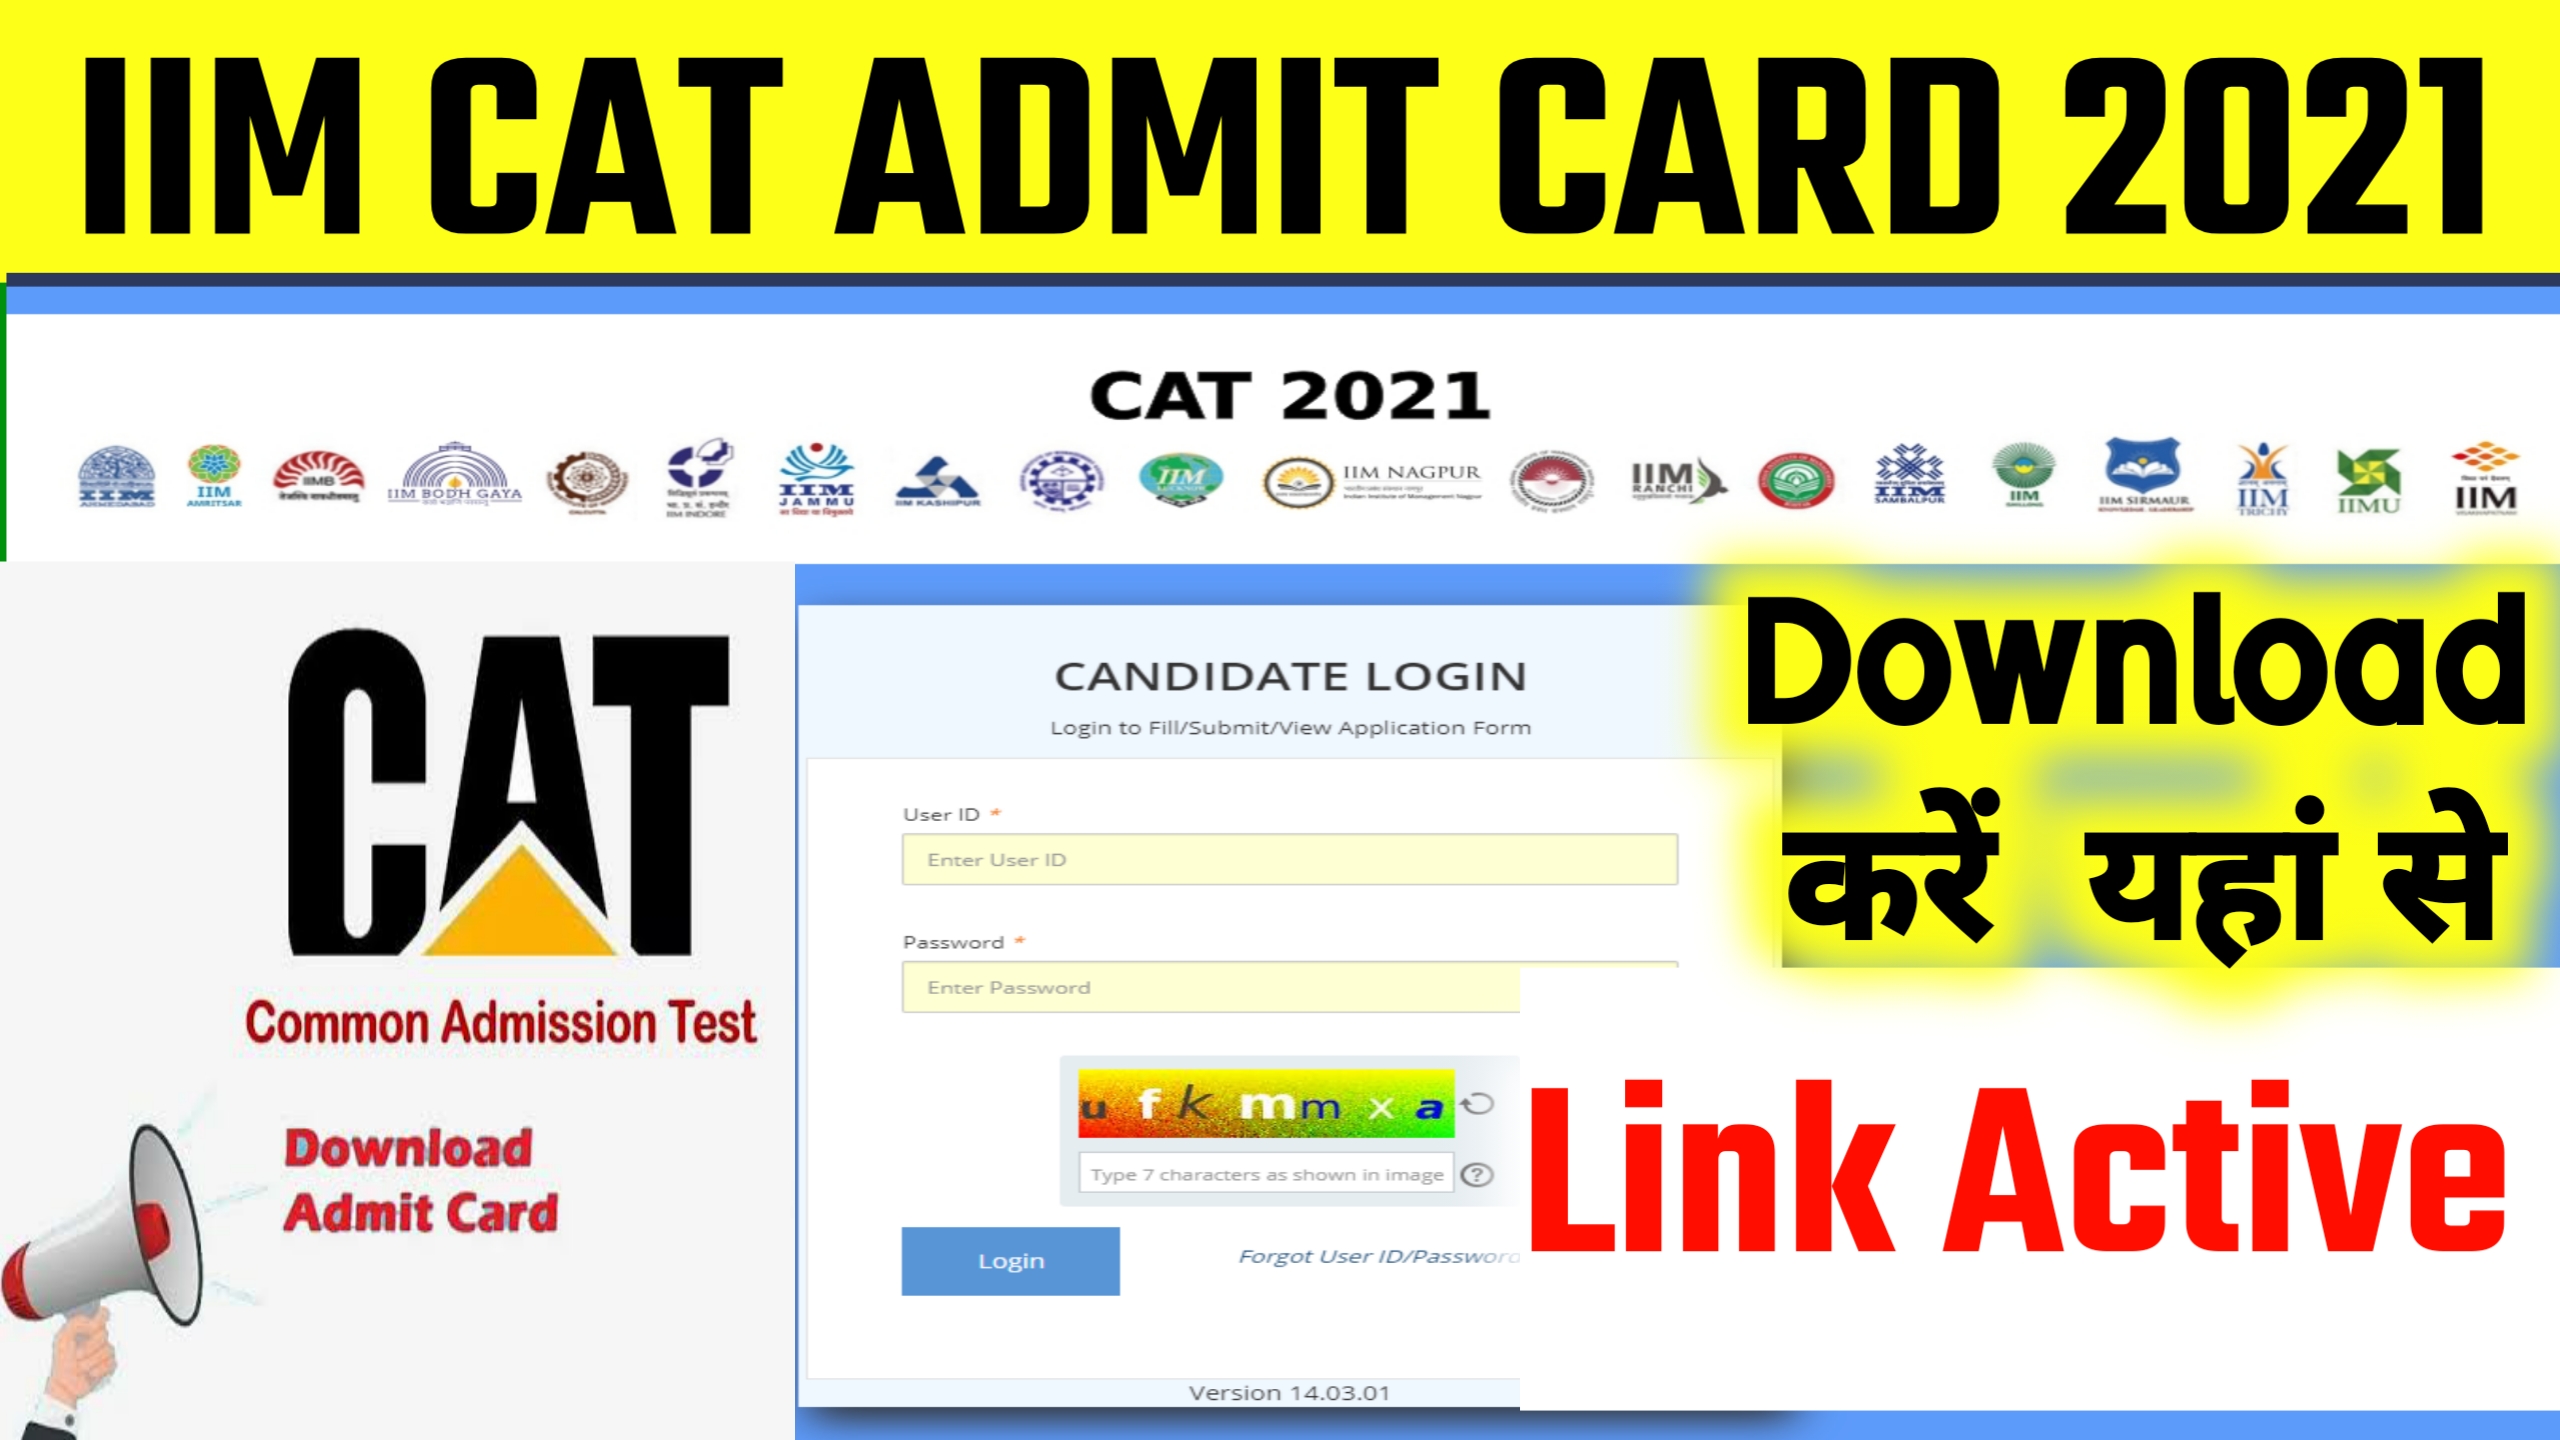 Iim Cat Admit Card 2021 Download ; ऐसे करें डाउनलोड कॉमन एडमिशन टेस्ट का एडमिट कार्ड